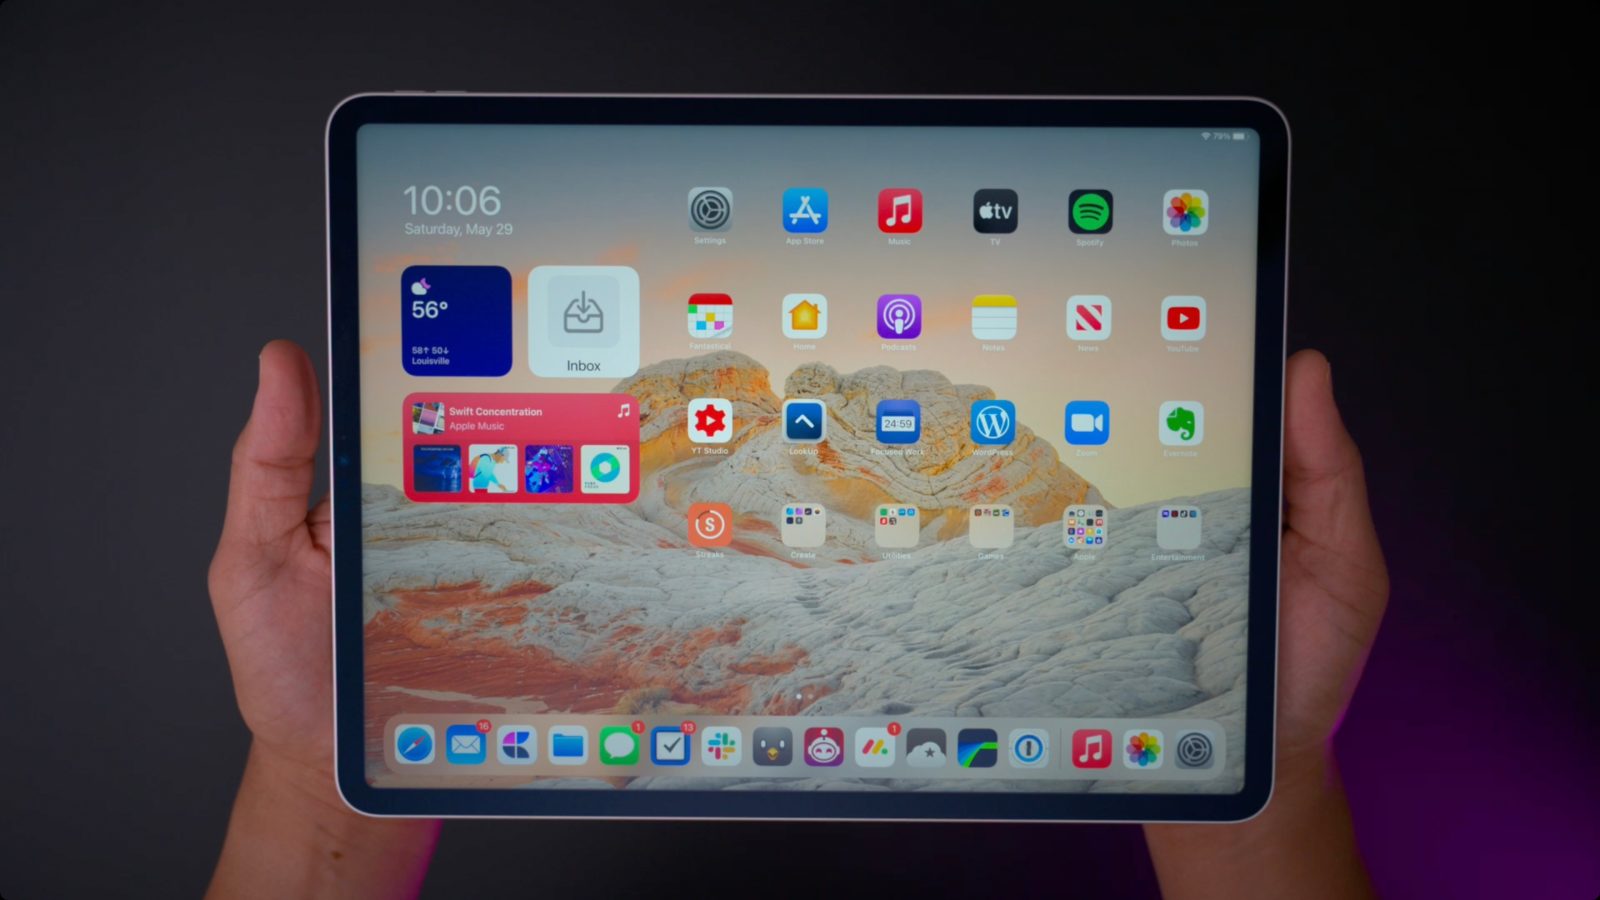 11-inch iPad Pro miniLED